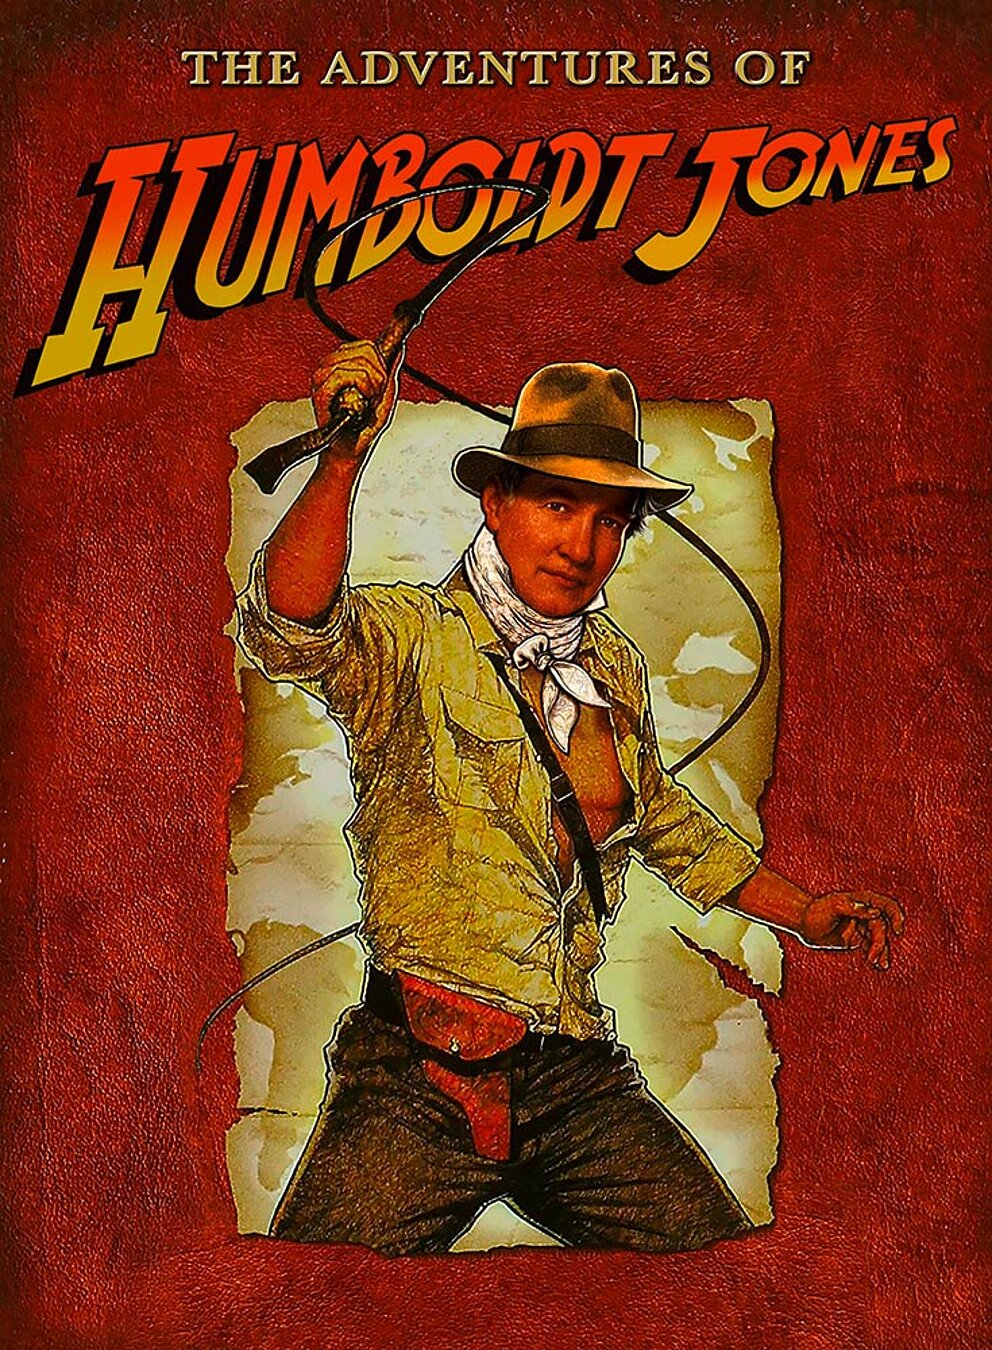 The adventures of Humboldt Jones: Humboldt swings the whip as Indiana Jones